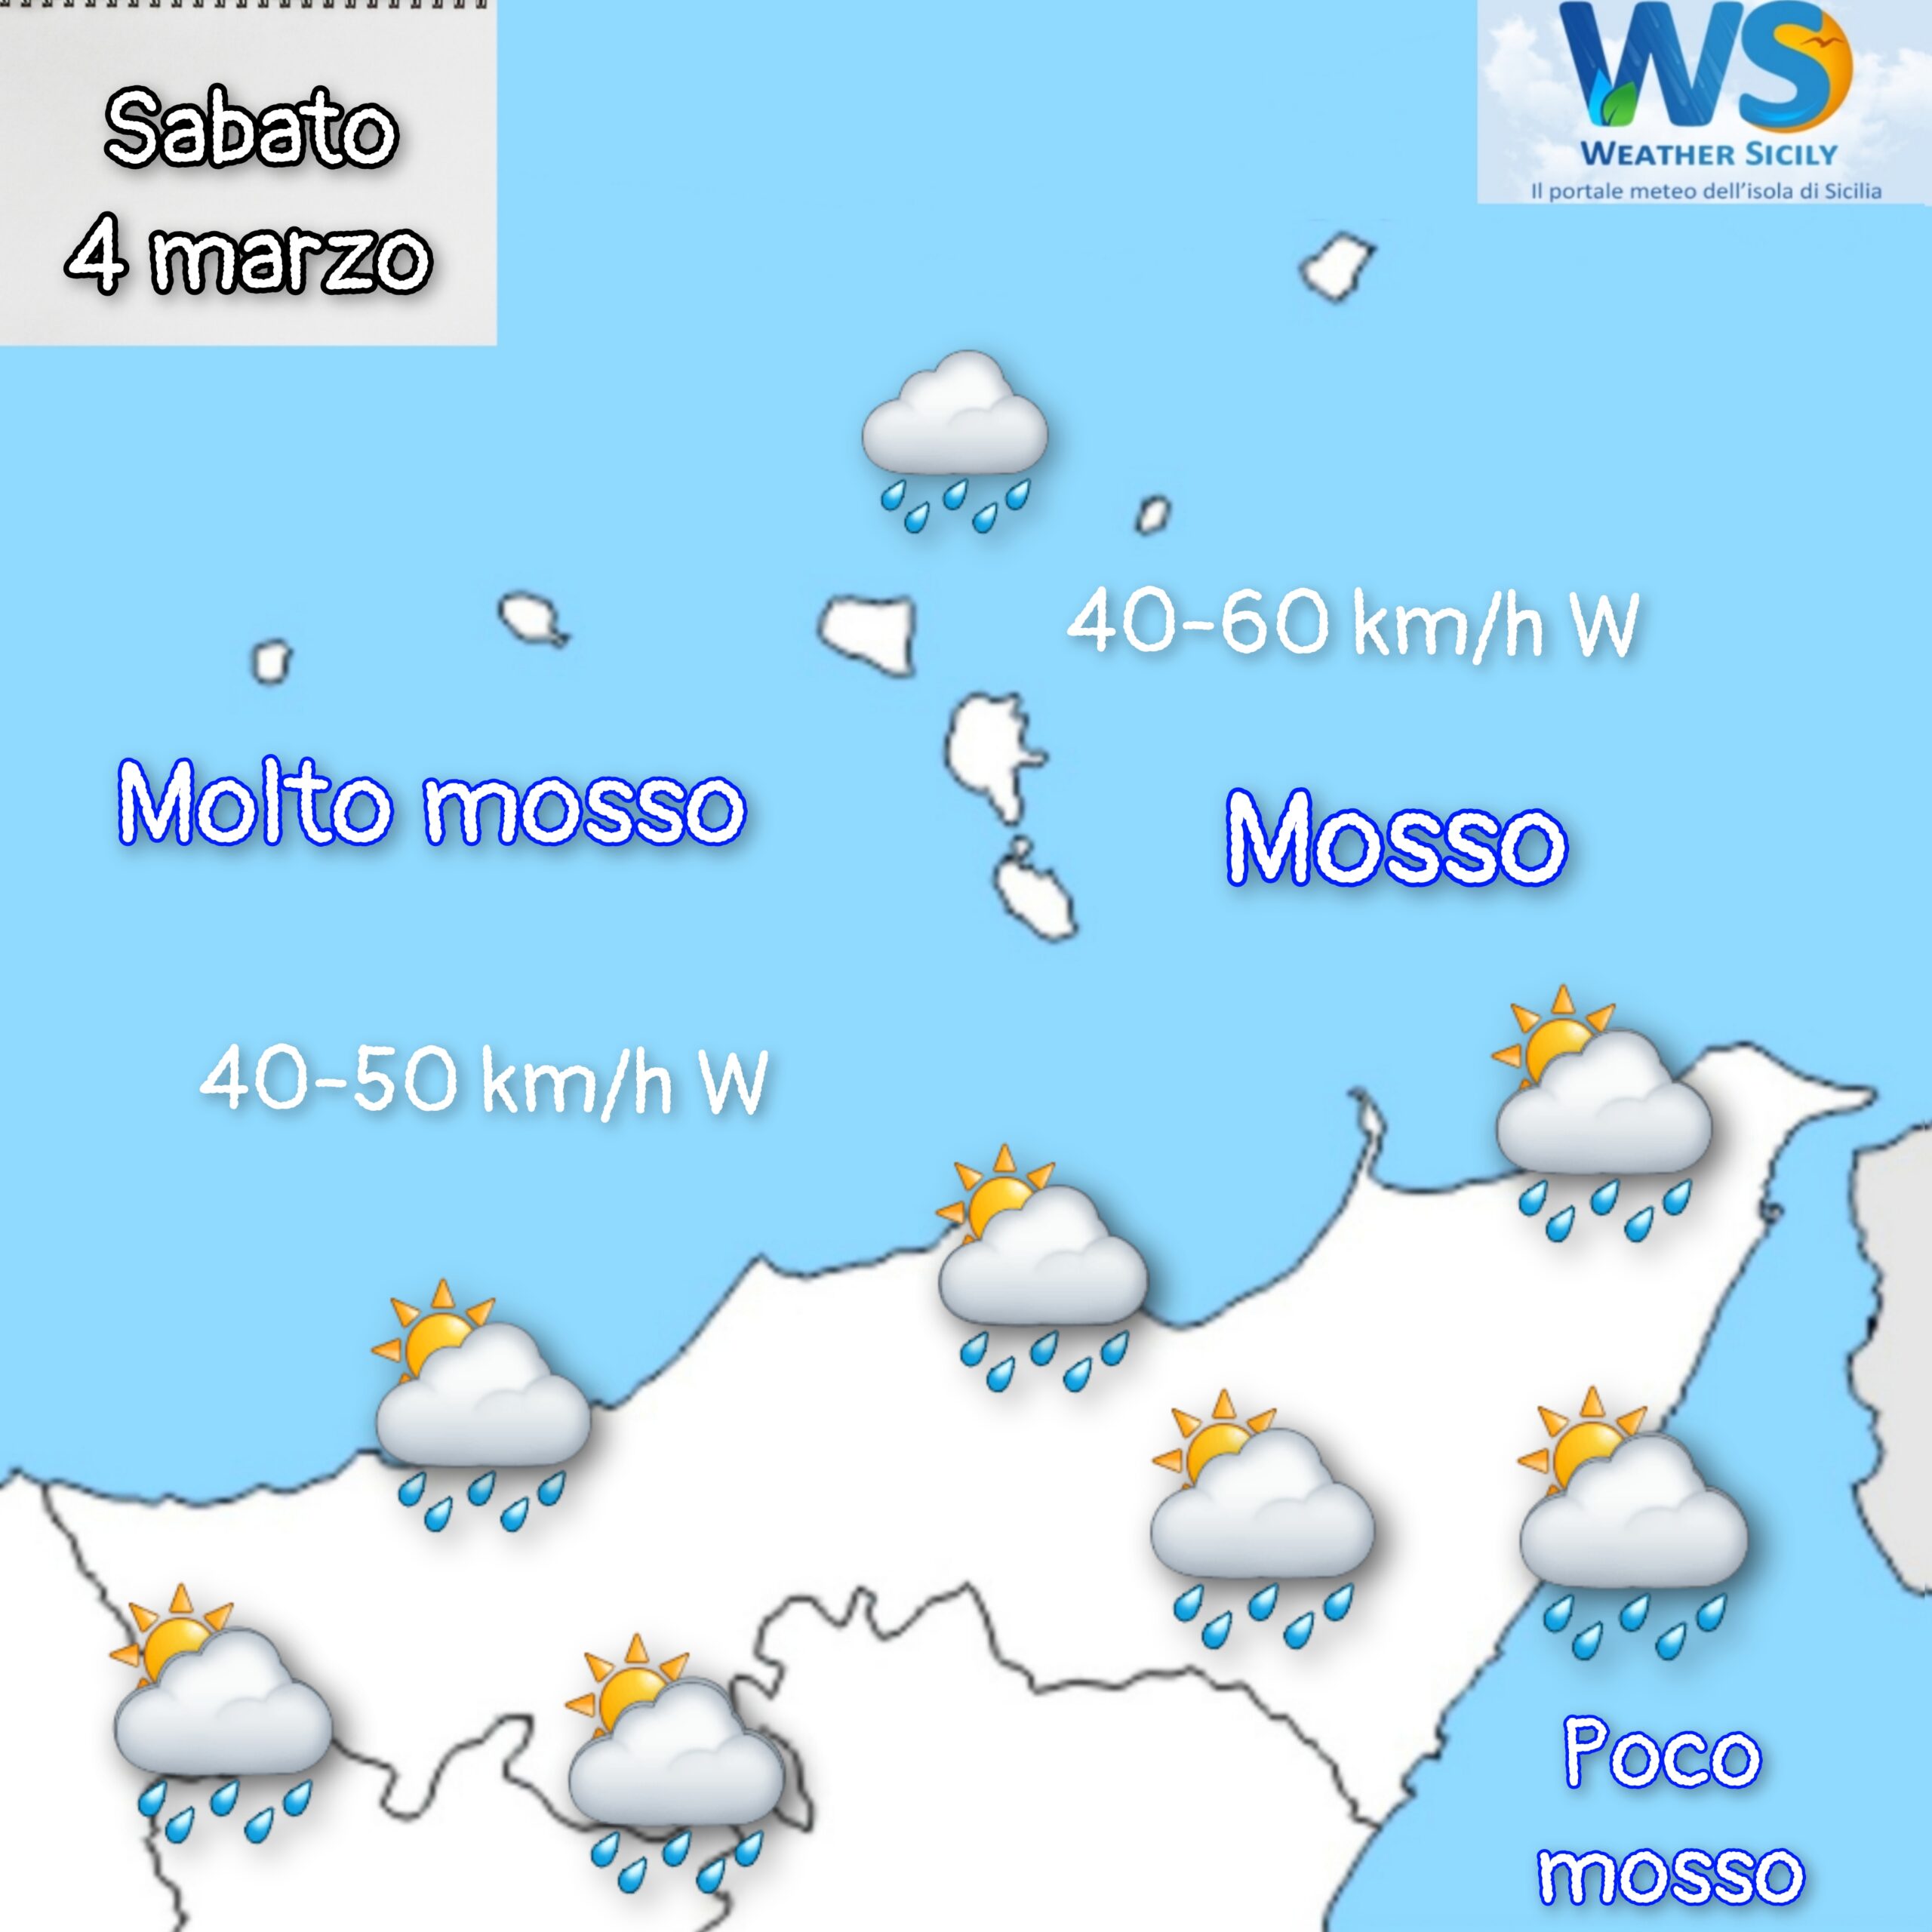 Meteo Messina e provincia: ancora instabilità nella giornata di sabato